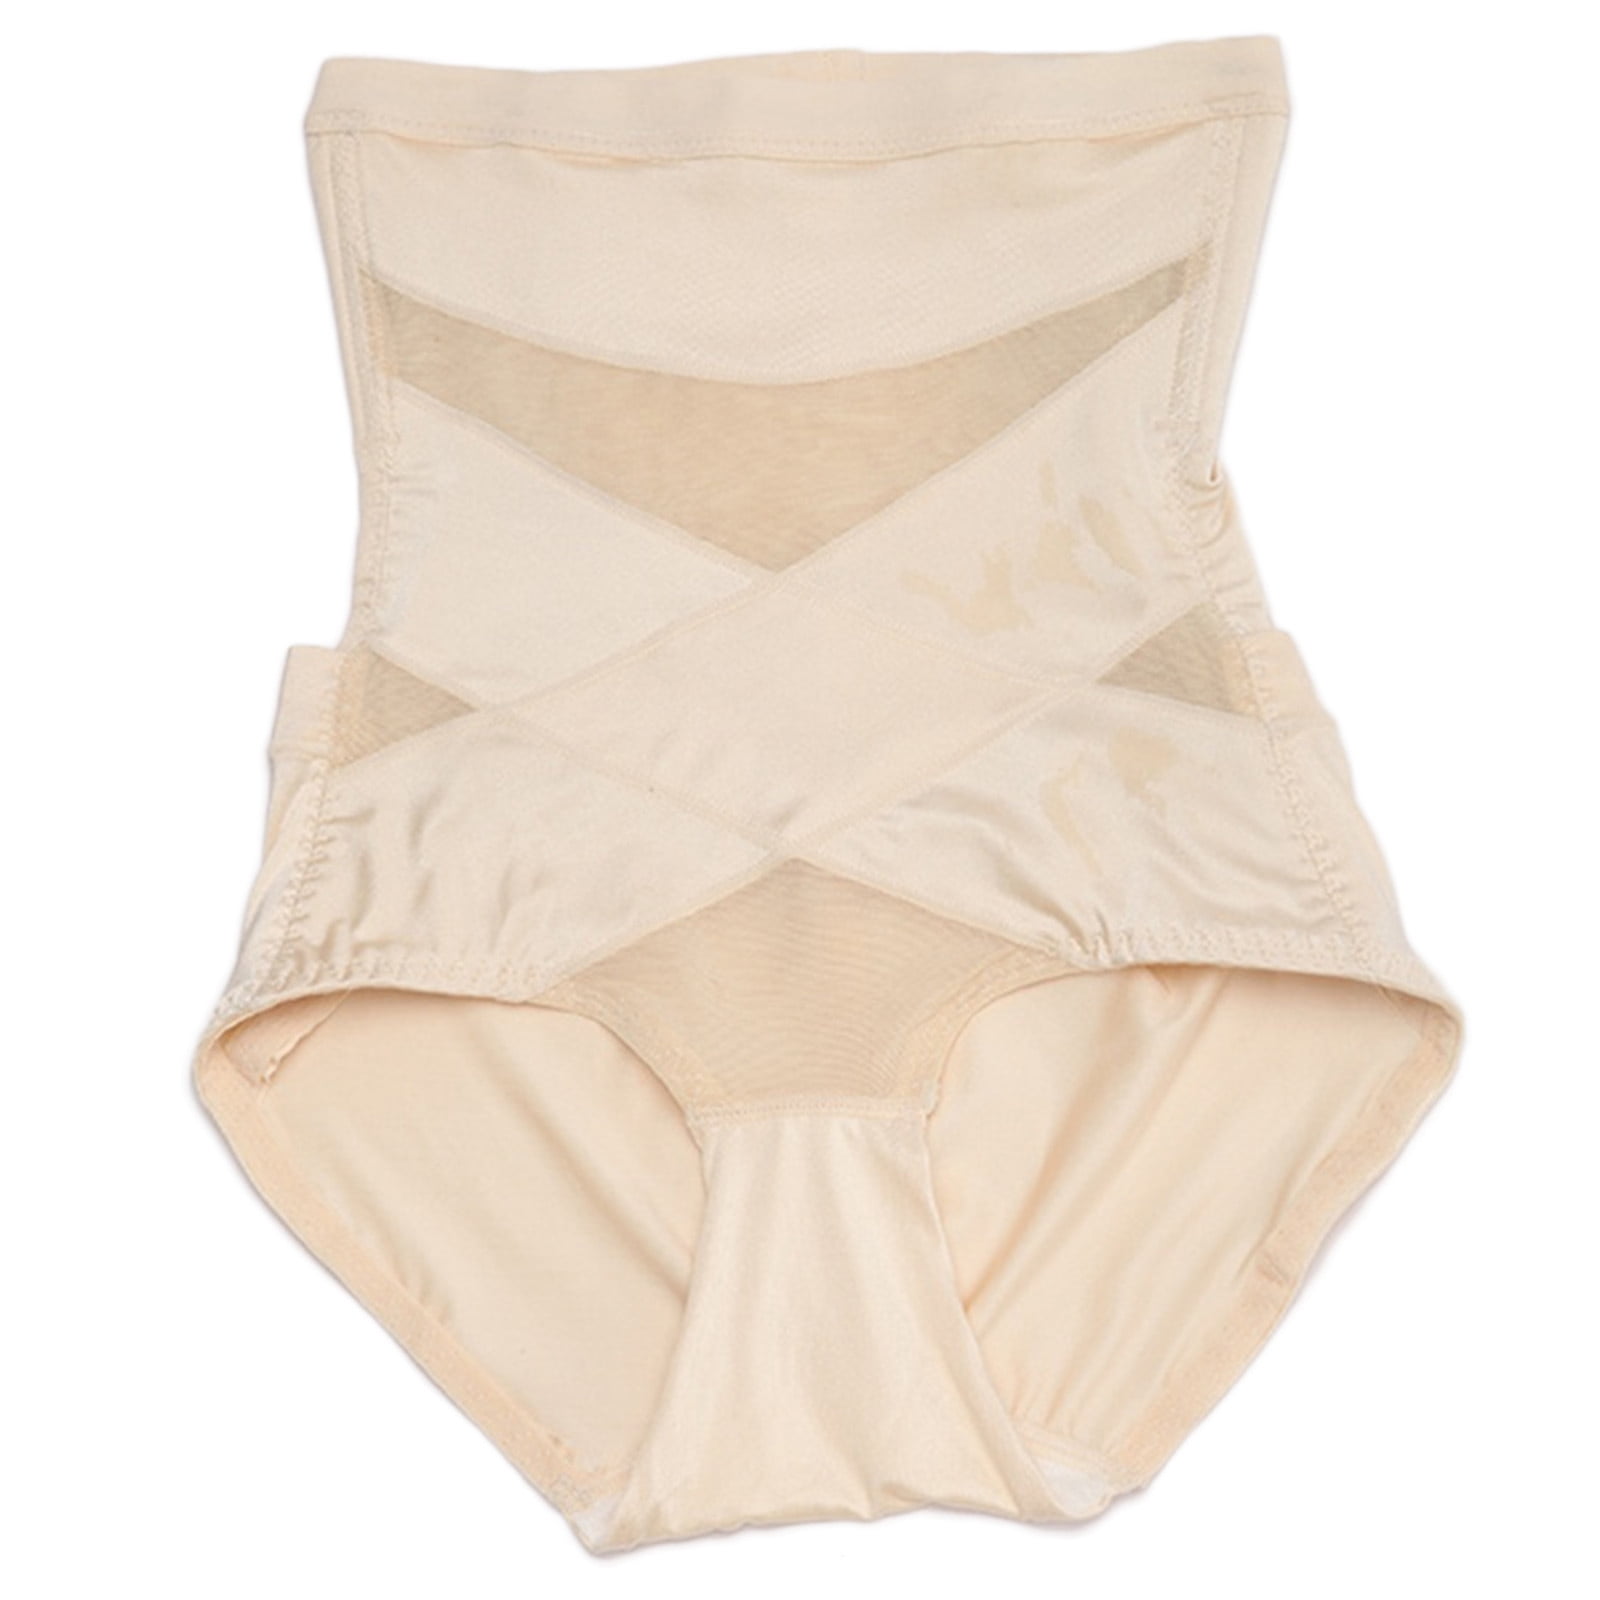 MRULIC shapewear for women tummy control Women's Body Shaping Underwear  High Waist Regain Slimming Hip Pants Beige + M 